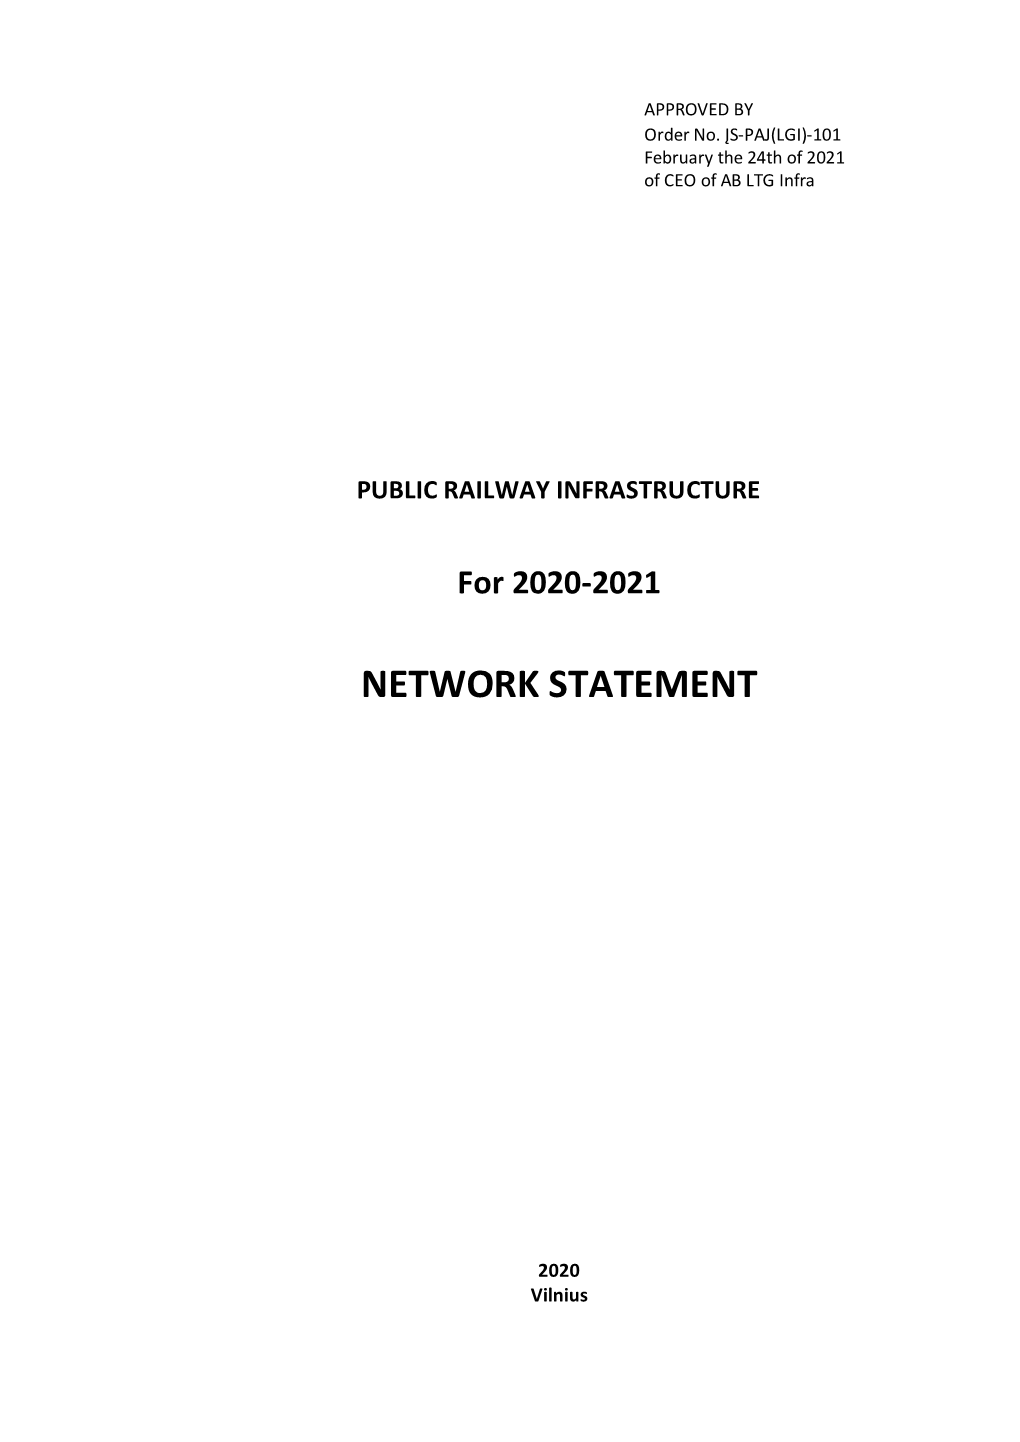 Network Statement